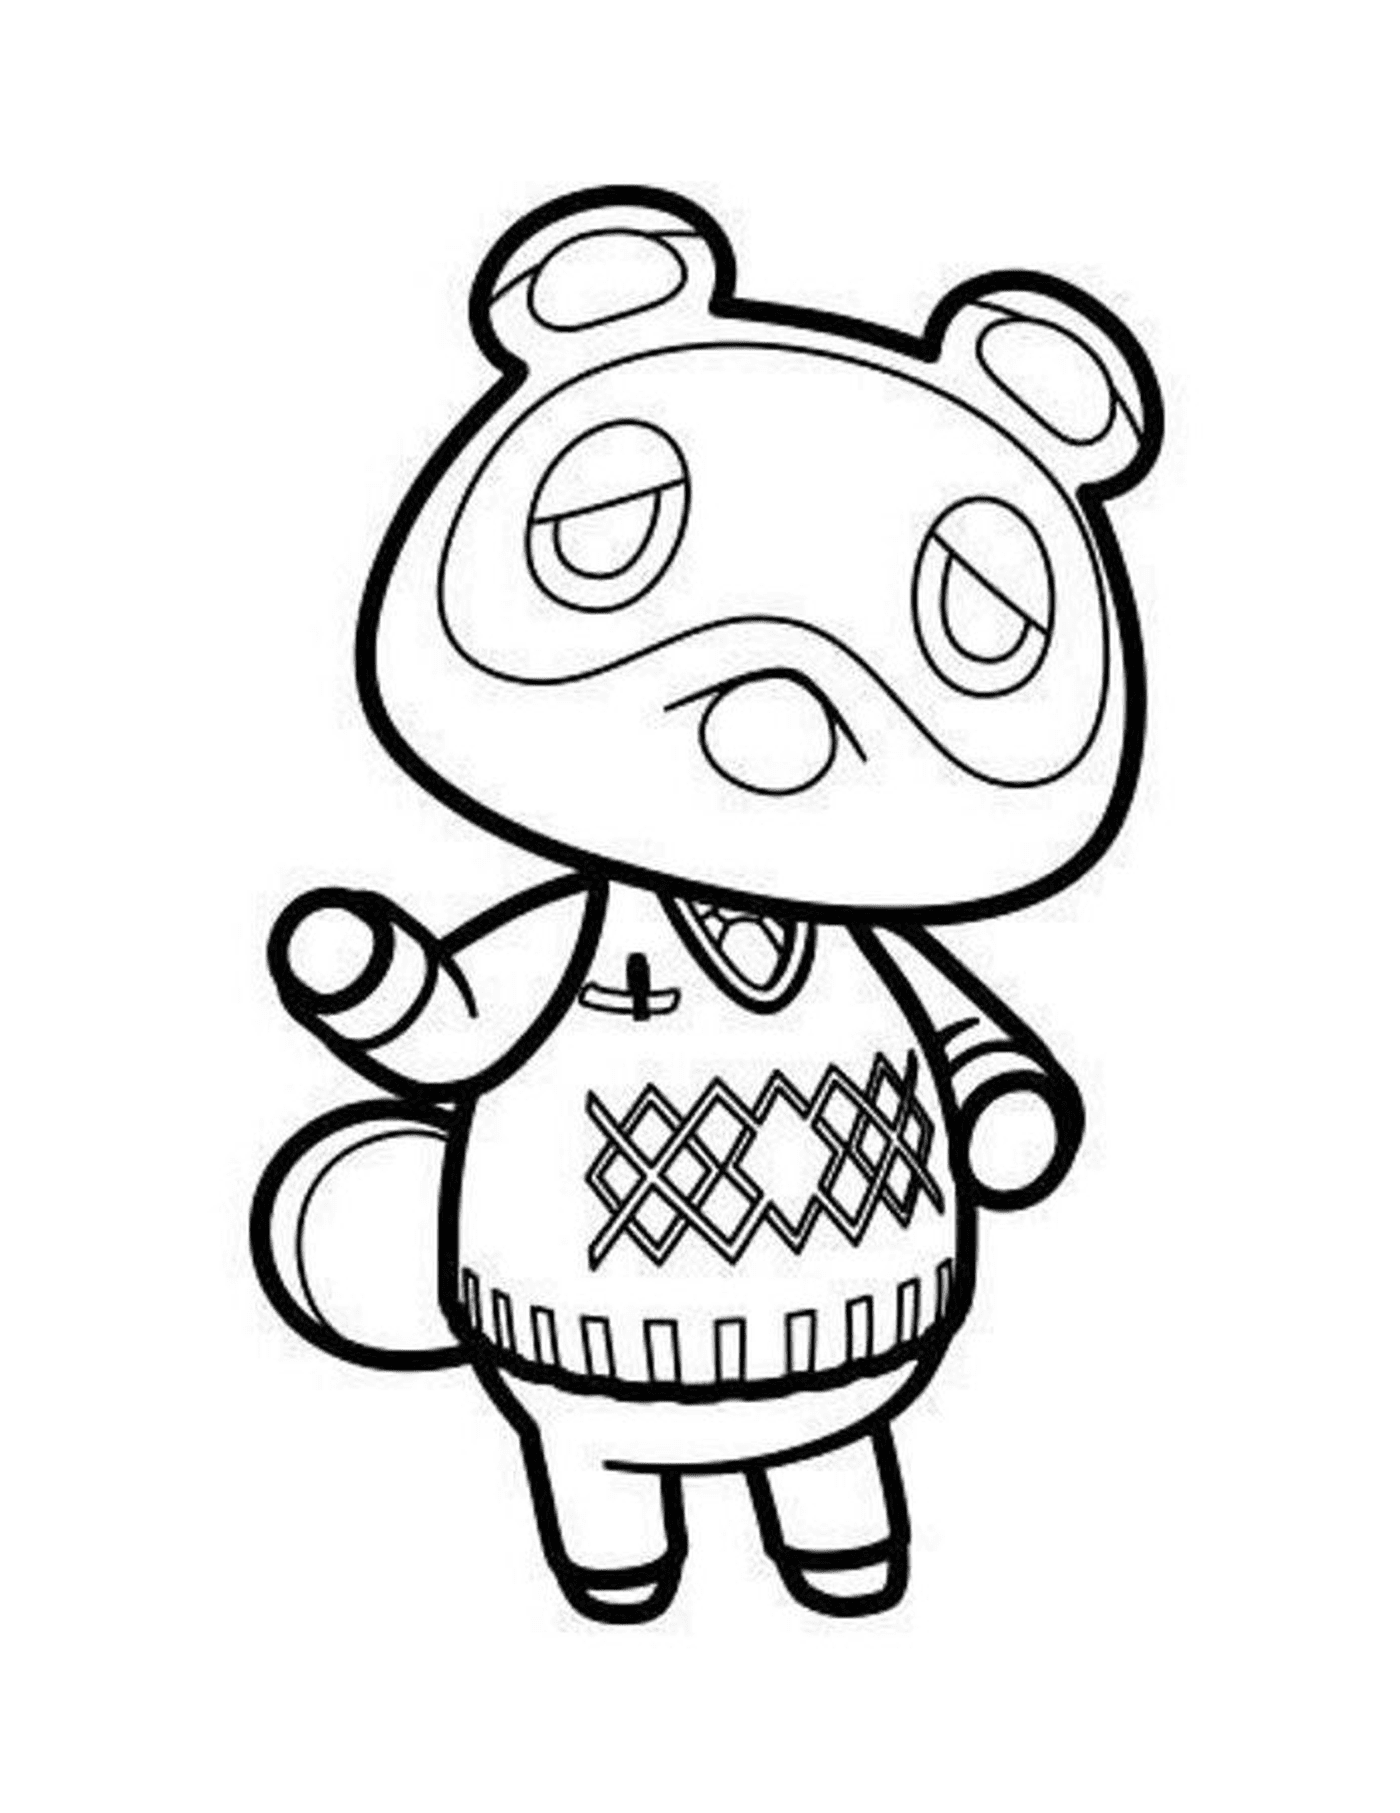  Tom Nook de Animal Crossing, animal com um suéter 